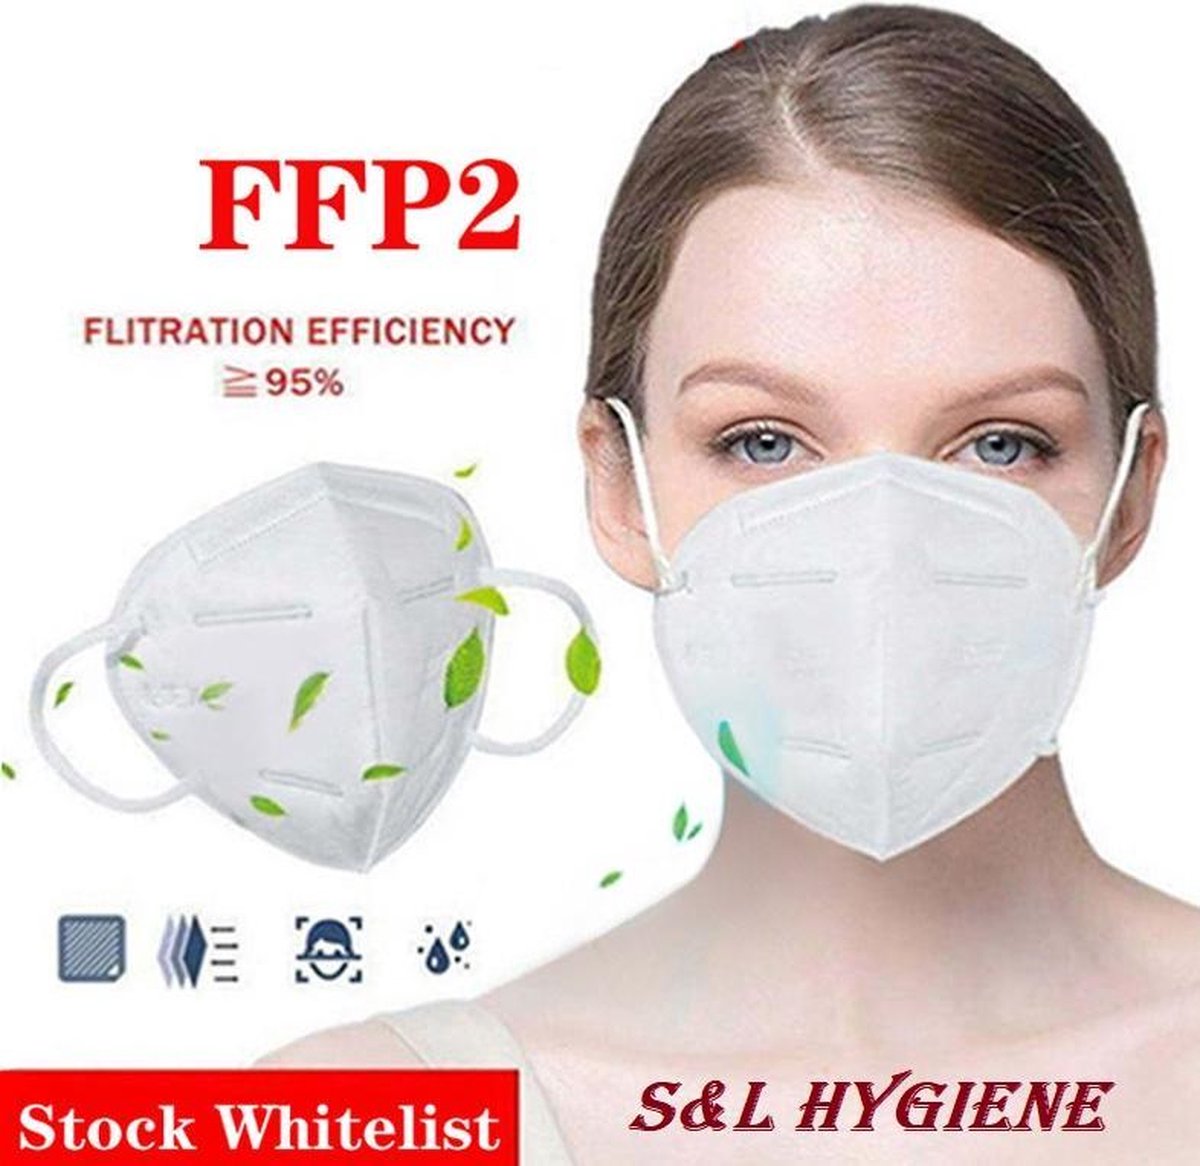 FFP2 mondkapjes & mondmasker FFP2 (KN95) CE gecertificeerd 12 stuks) #1 kwaliteit op de markt in FFP2 5 laags